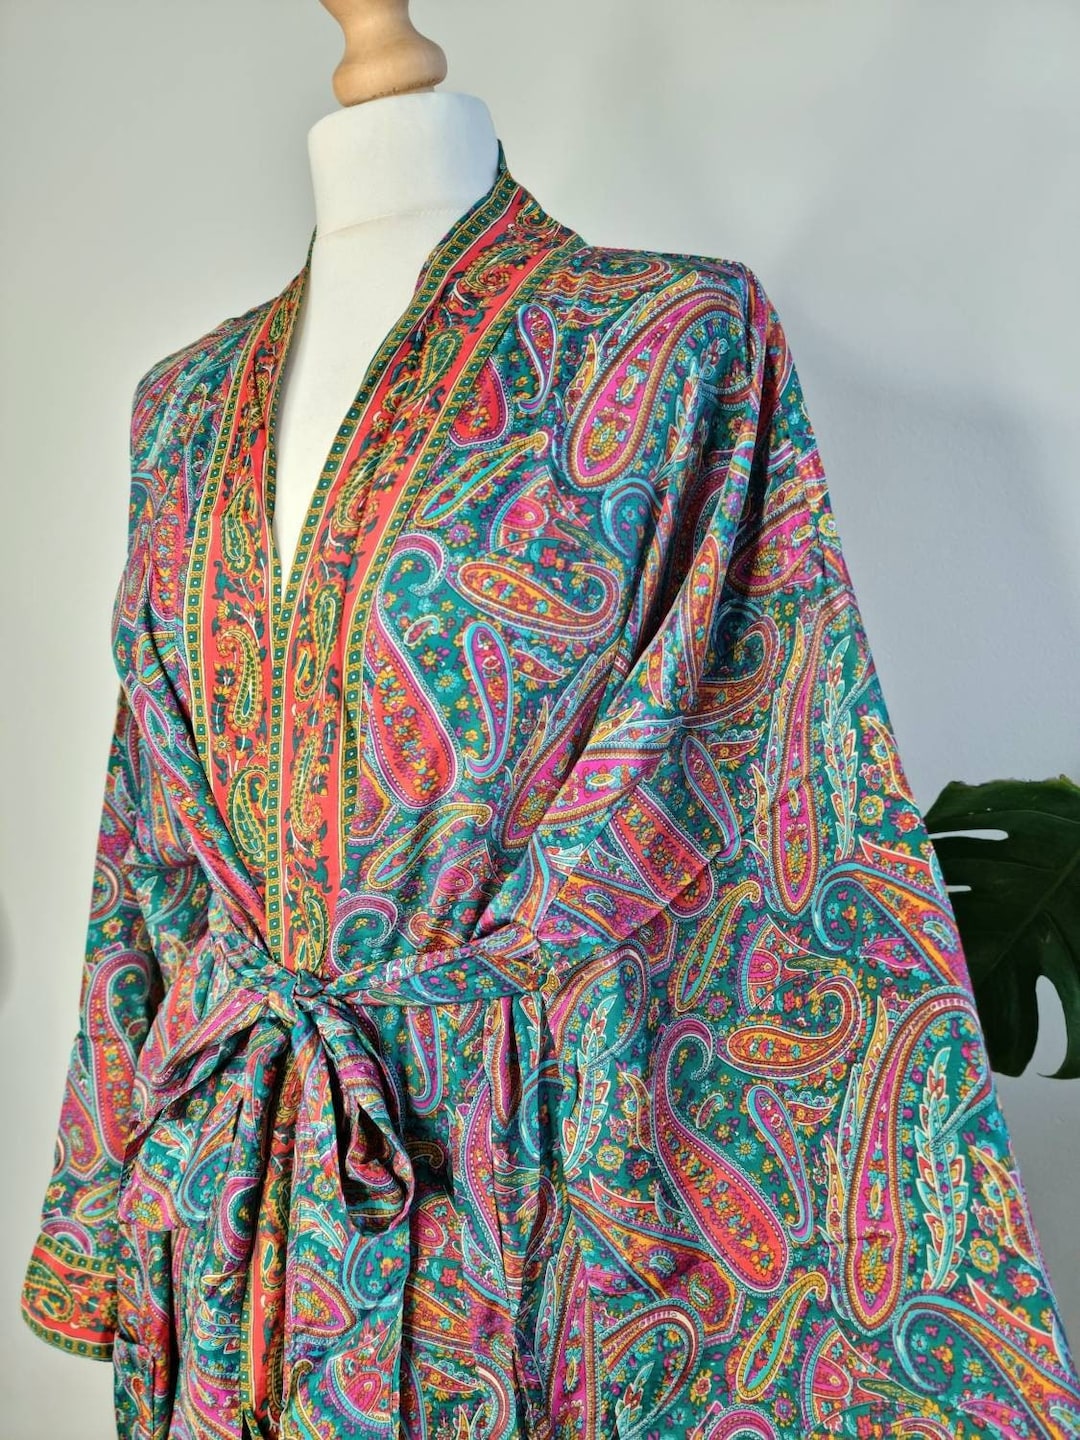 New Silk Sari Boho Kimono Regal House Robe Luxury Lounge Flowy - Etsy